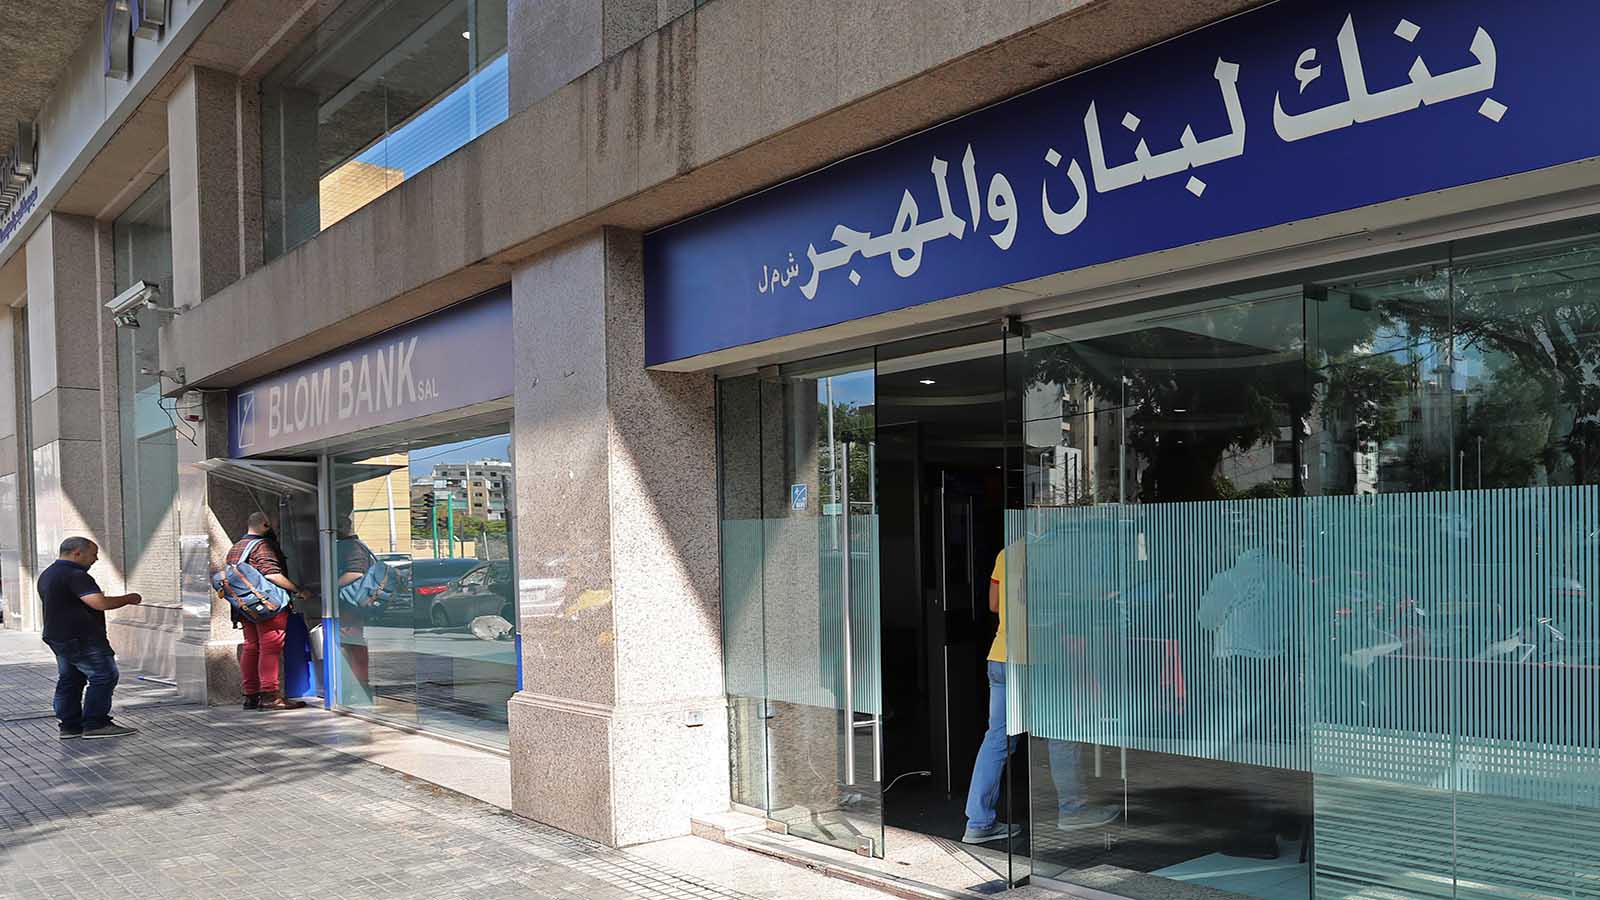 "بلوم بنك" مصر للبيع؟